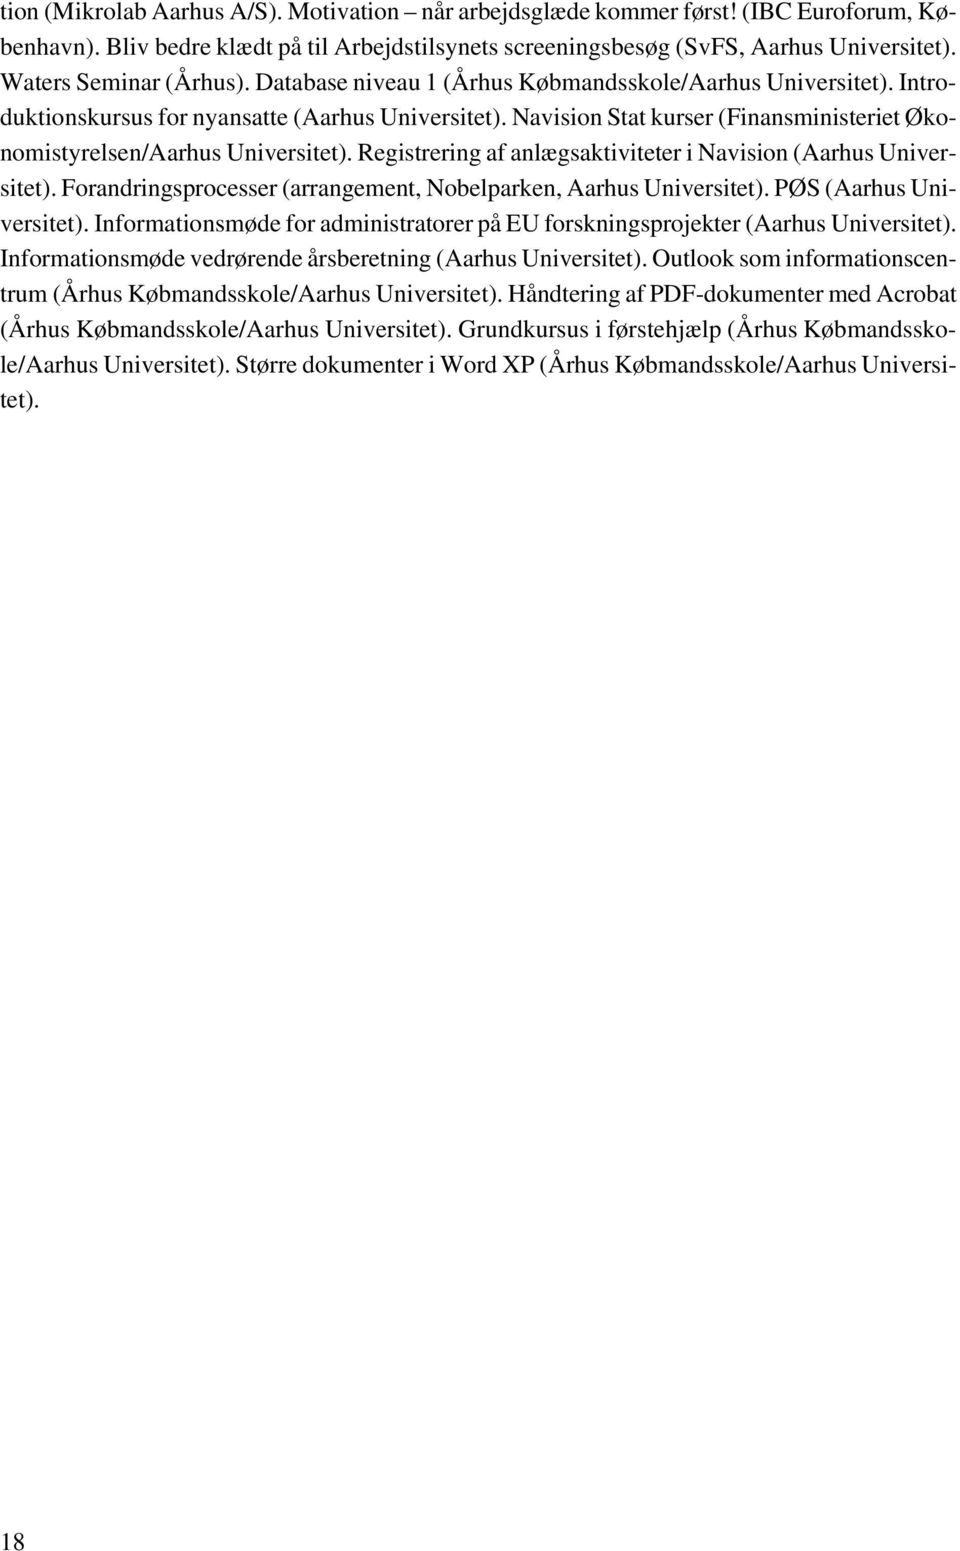 Navision Stat kurser (Finansministeriet Økonomistyrelsen/Aarhus Universitet). Registrering af anlægsaktiviteter i Navision (Aarhus Universitet).